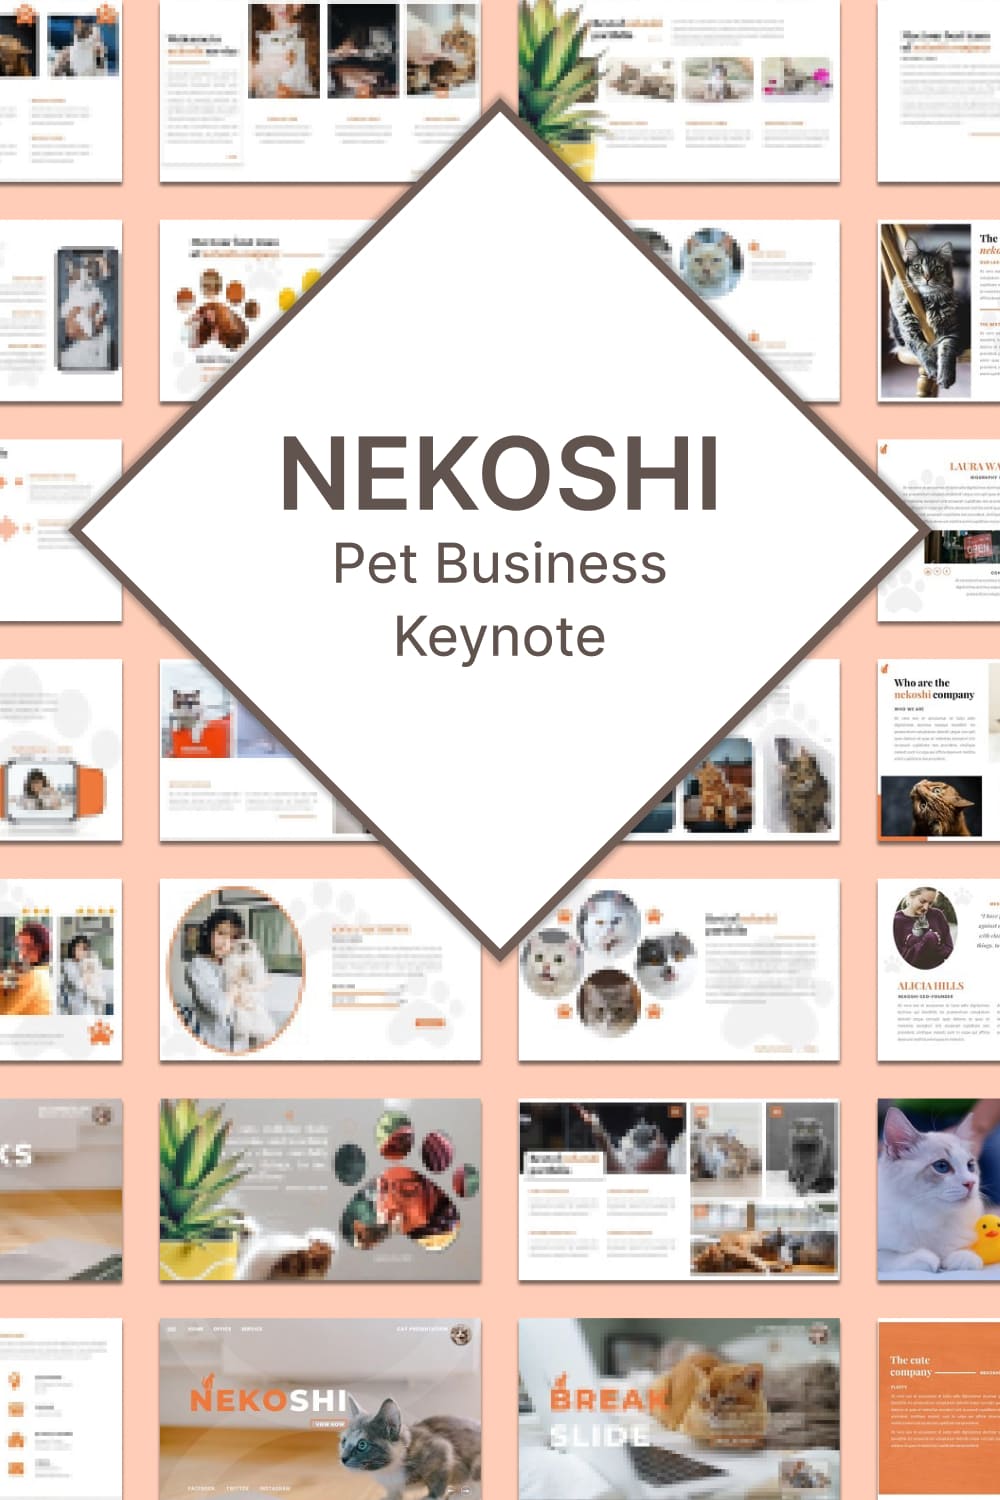 nekoshi pet business keynote 02 960